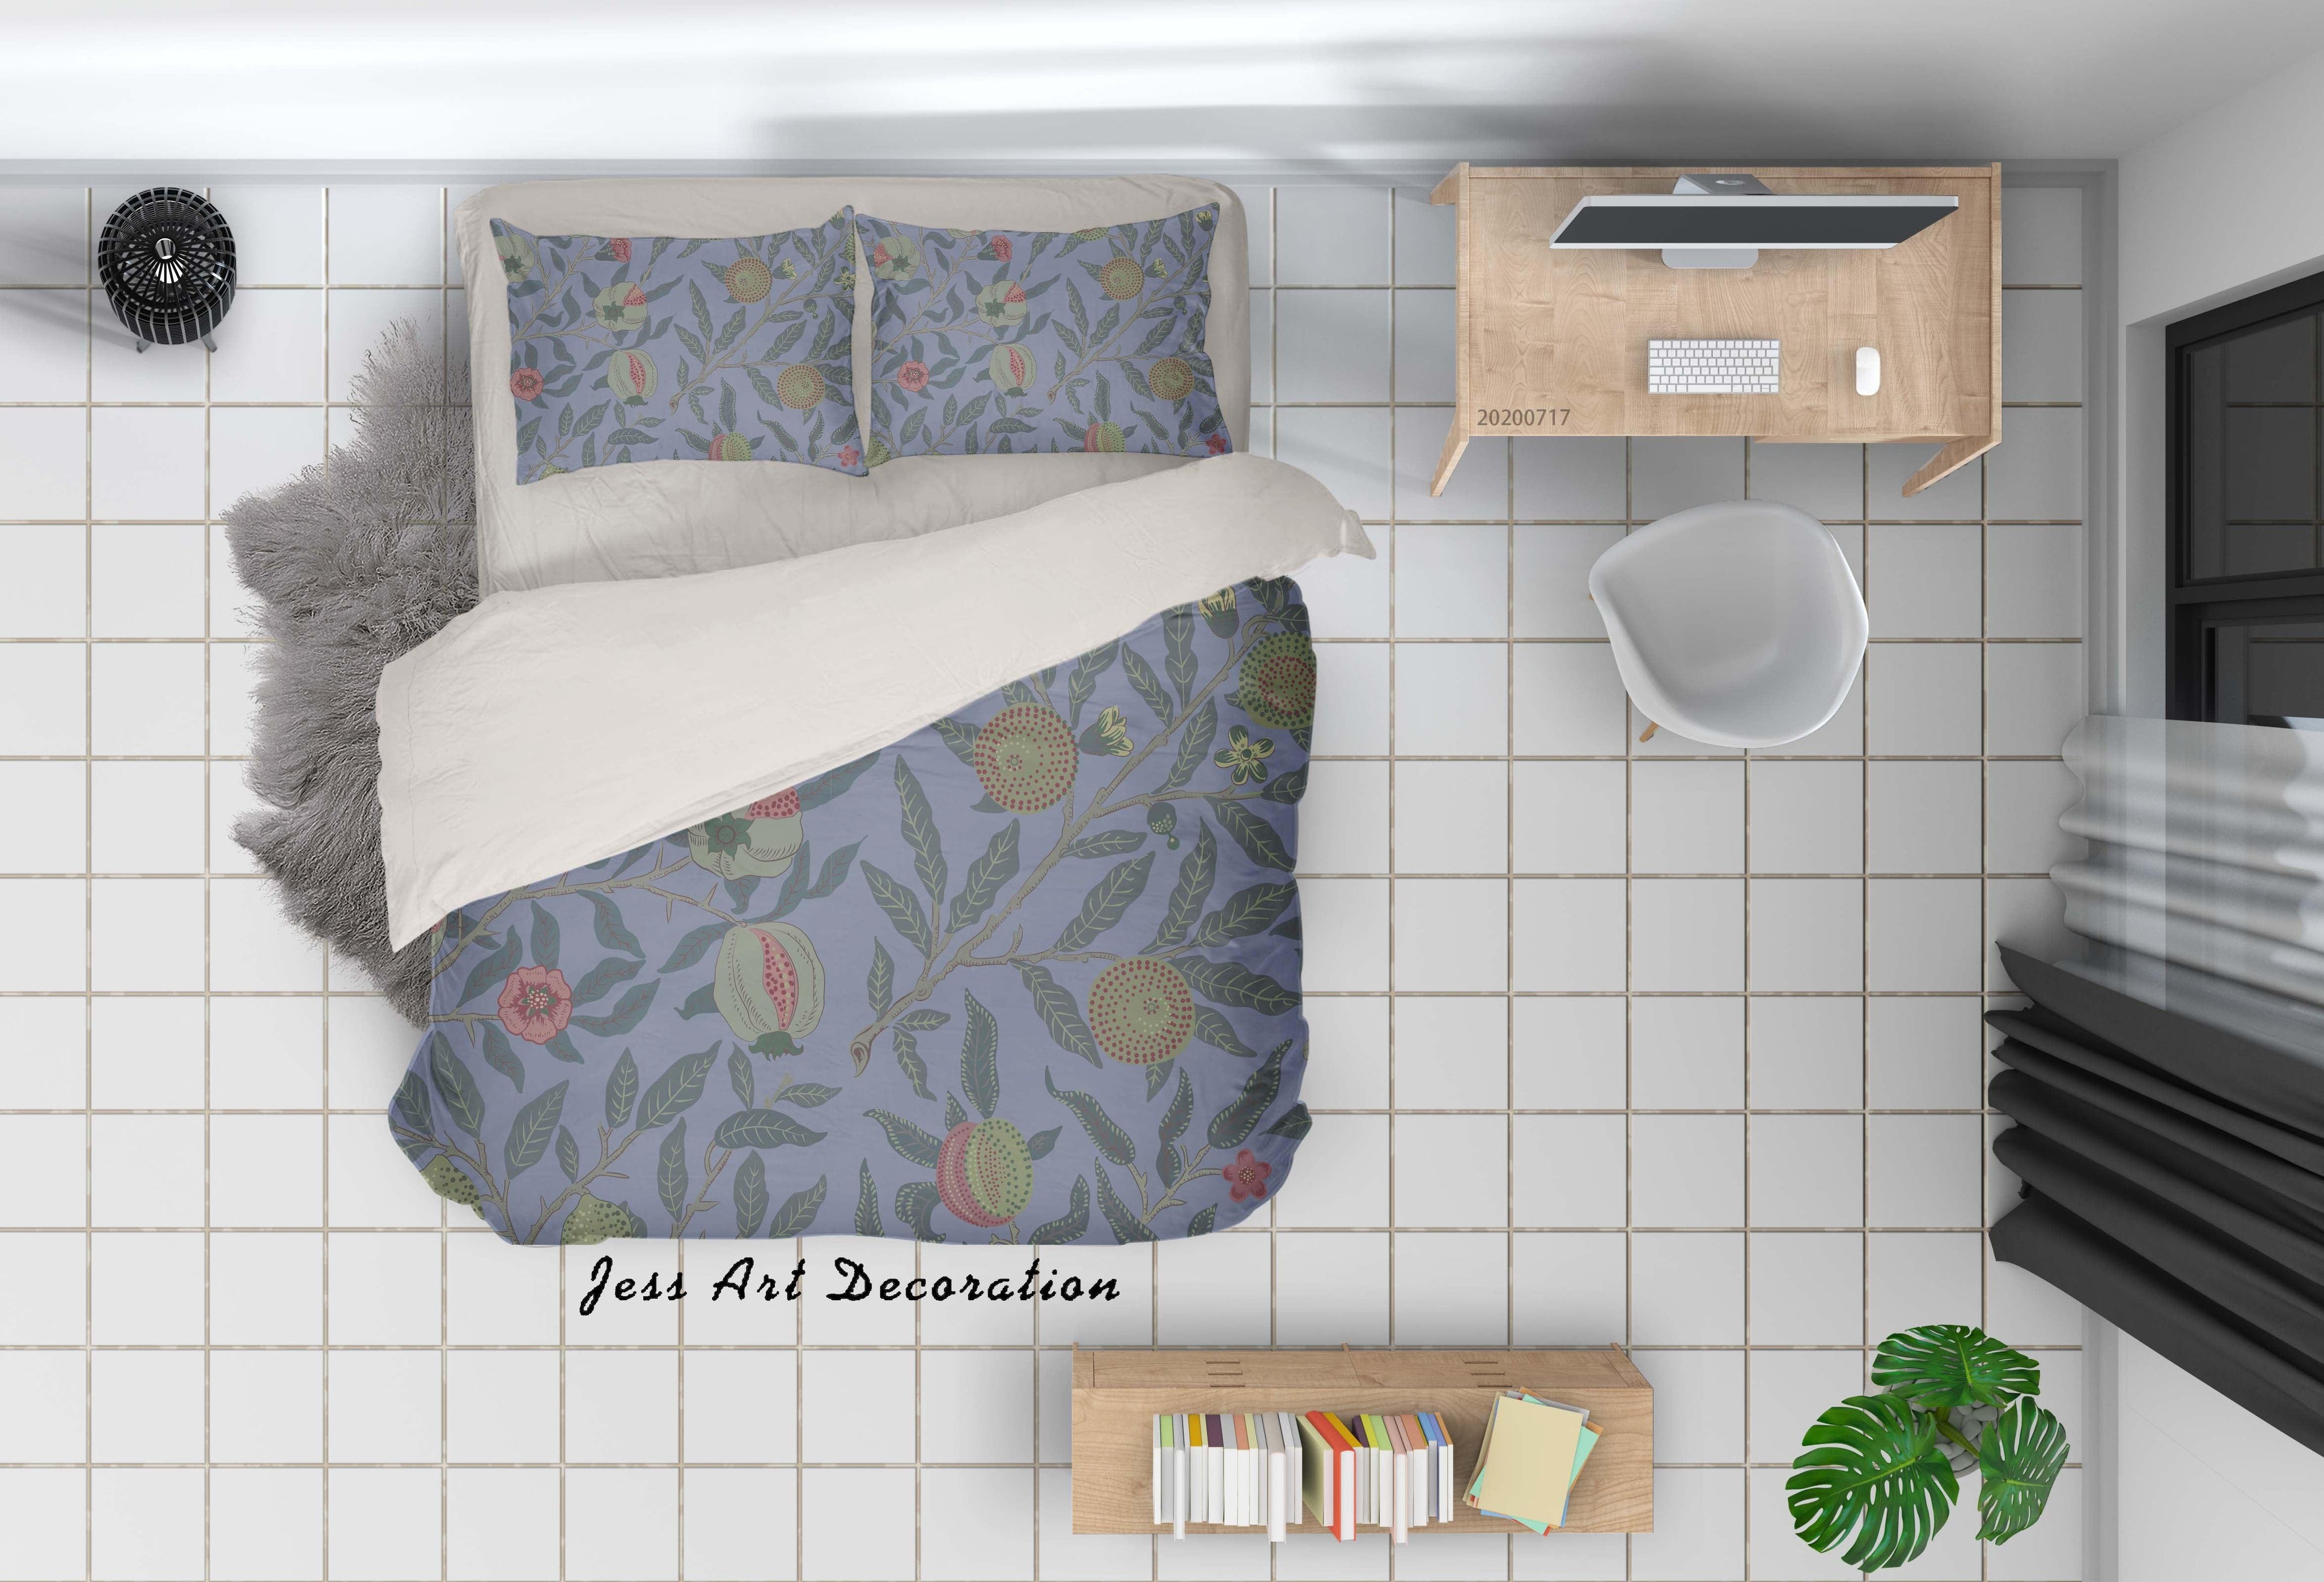 3D Vintage Floral Quilt Cover Set Bedding Set Duvet Cover Pillowcases WJ 1608- Jess Art Decoration